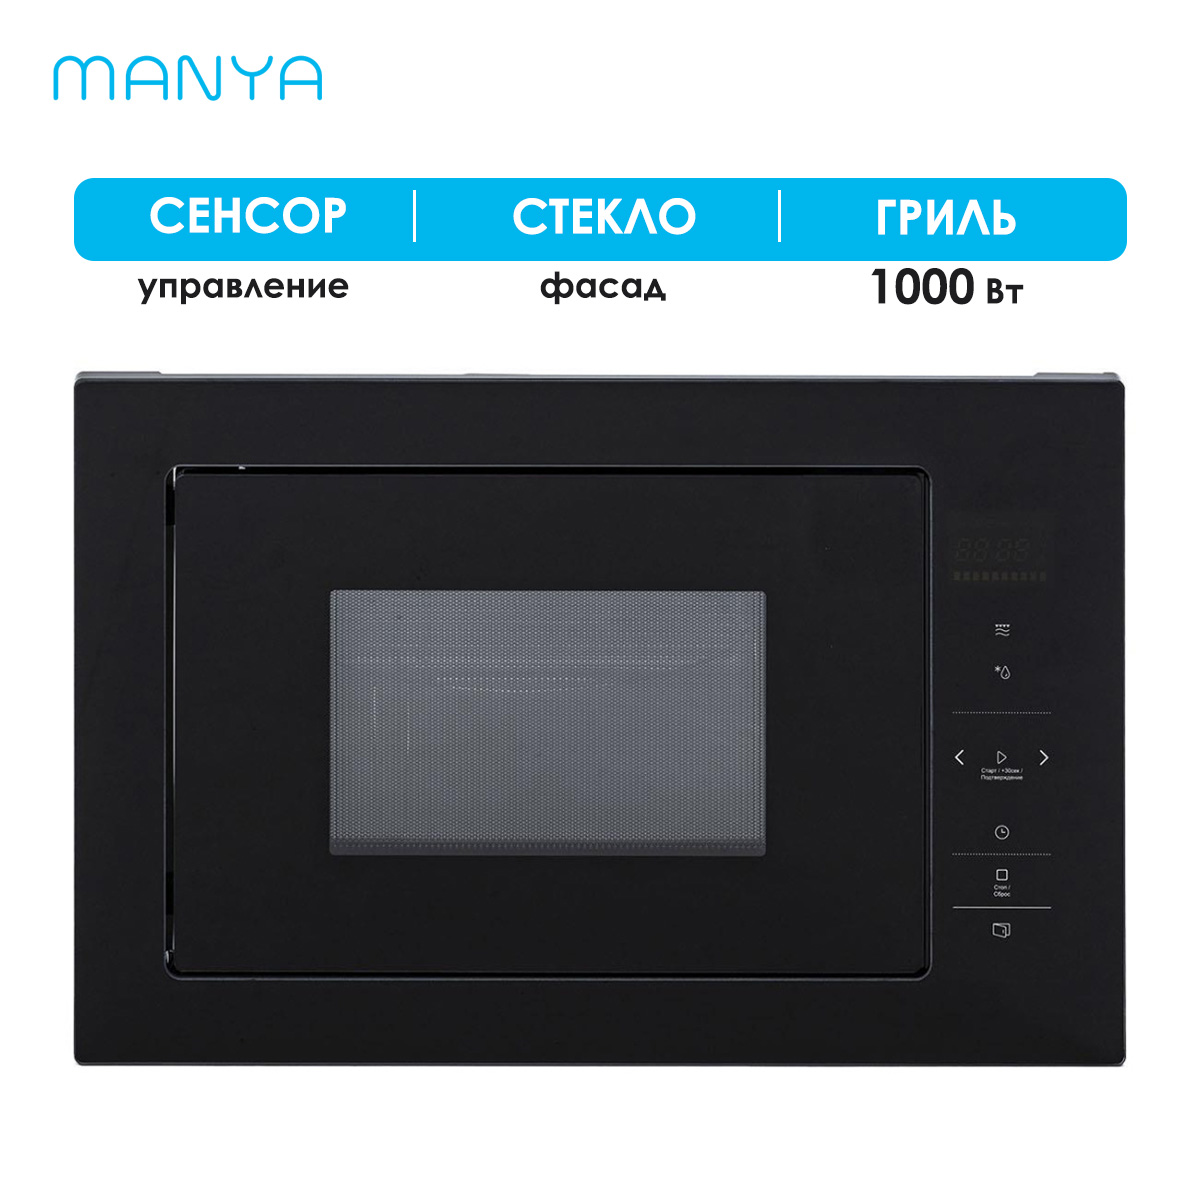 Встраиваемая микроволновая печь Manya BM2511BG черная встраиваемая микроволновая печь krona laune 60 s k серебристая черная